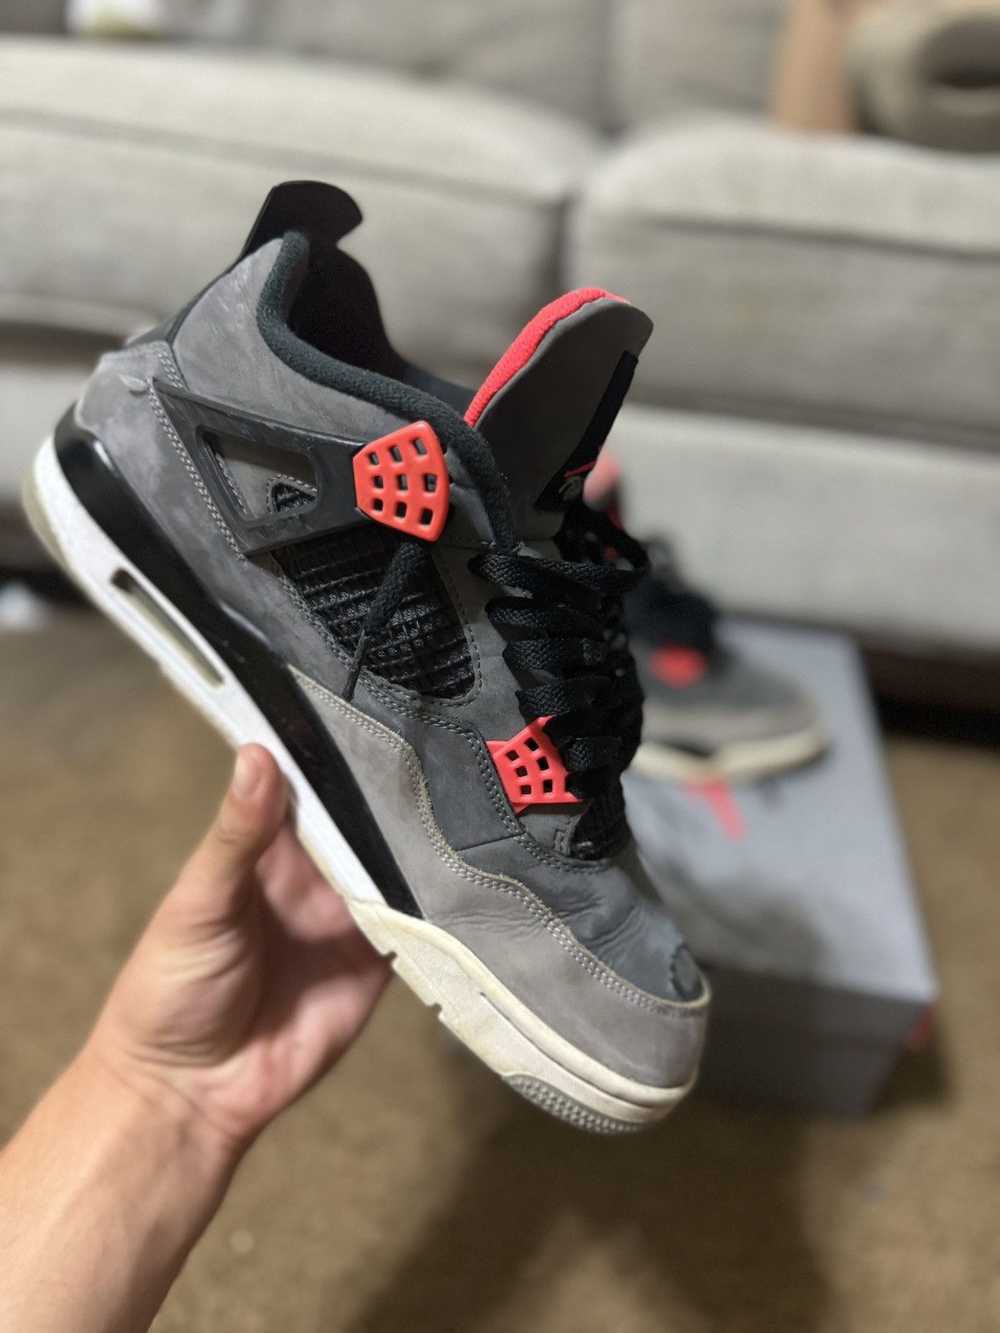 Jordan Brand × Nike × Sneakers Jordan 4 “Infrared” - image 4